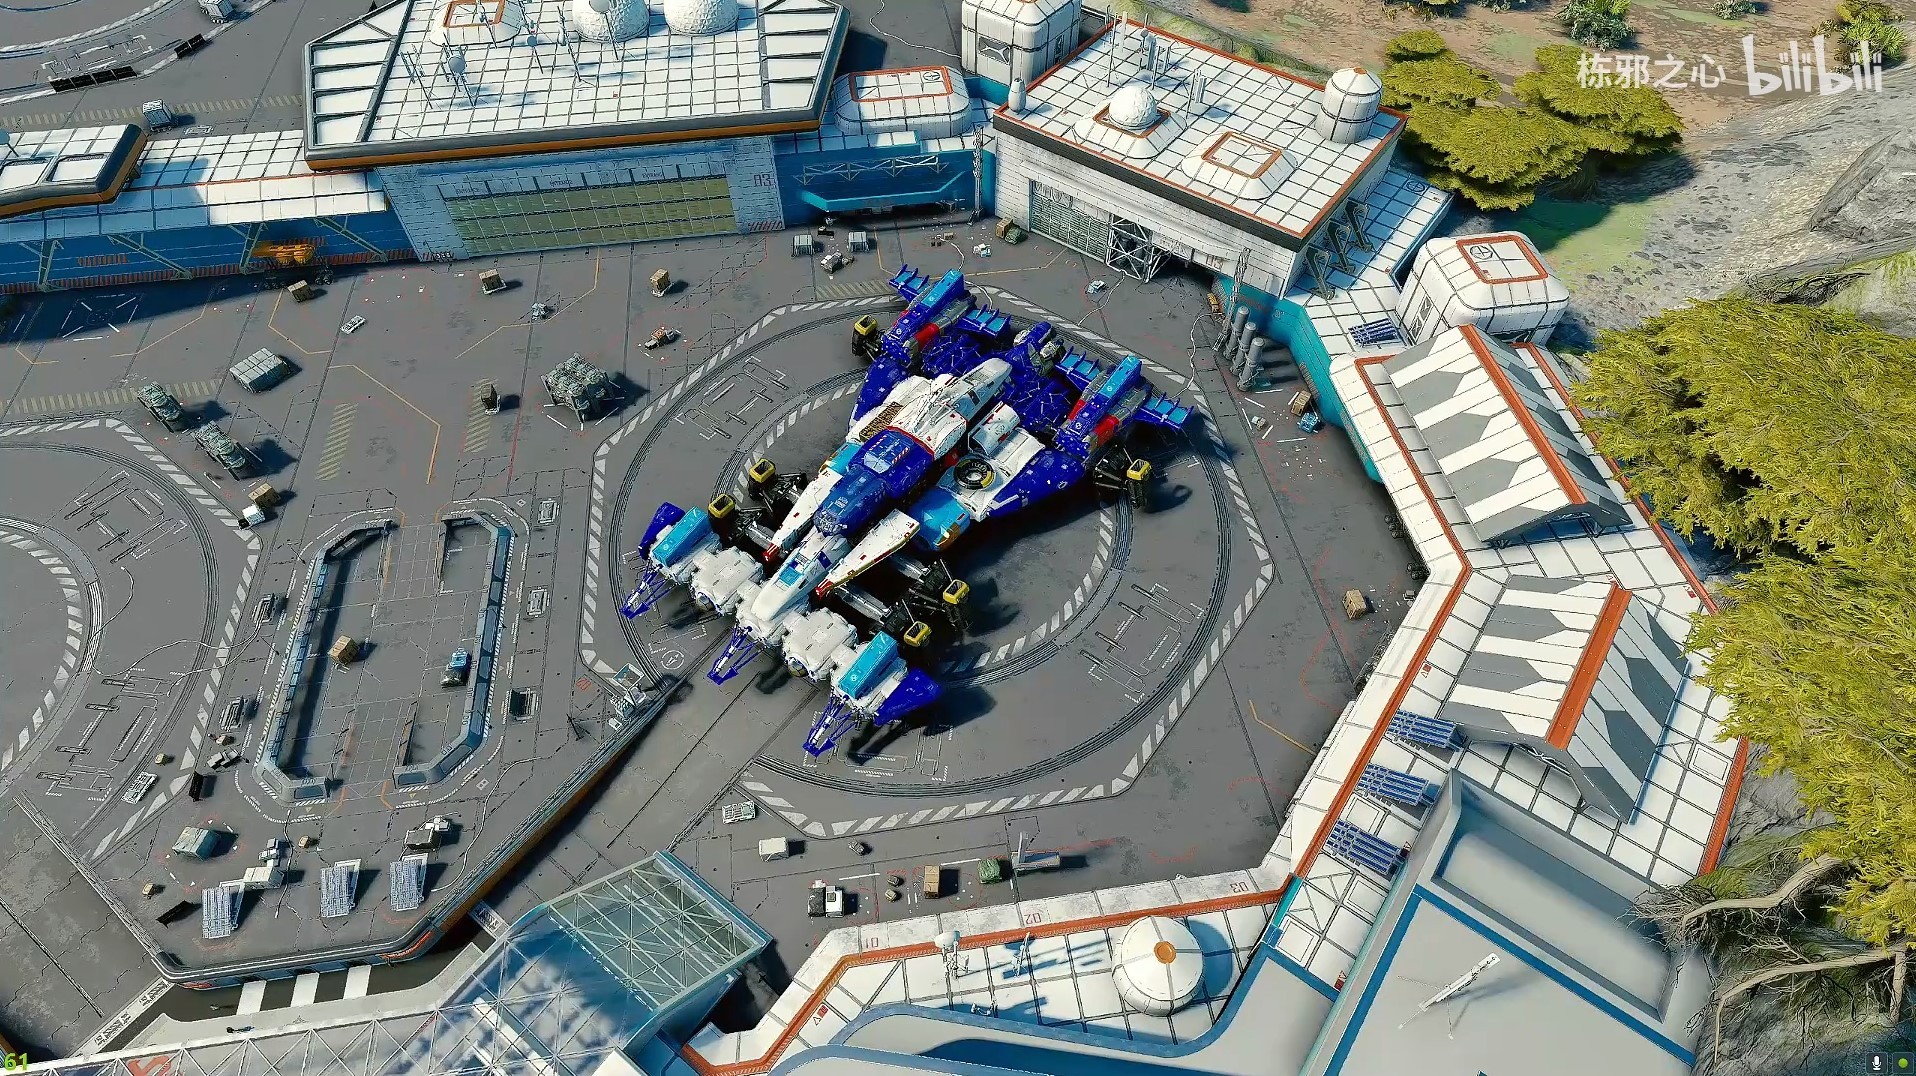 《星空》高智能方程式赛车阿斯拉达号飞船组装展示 - 第1张